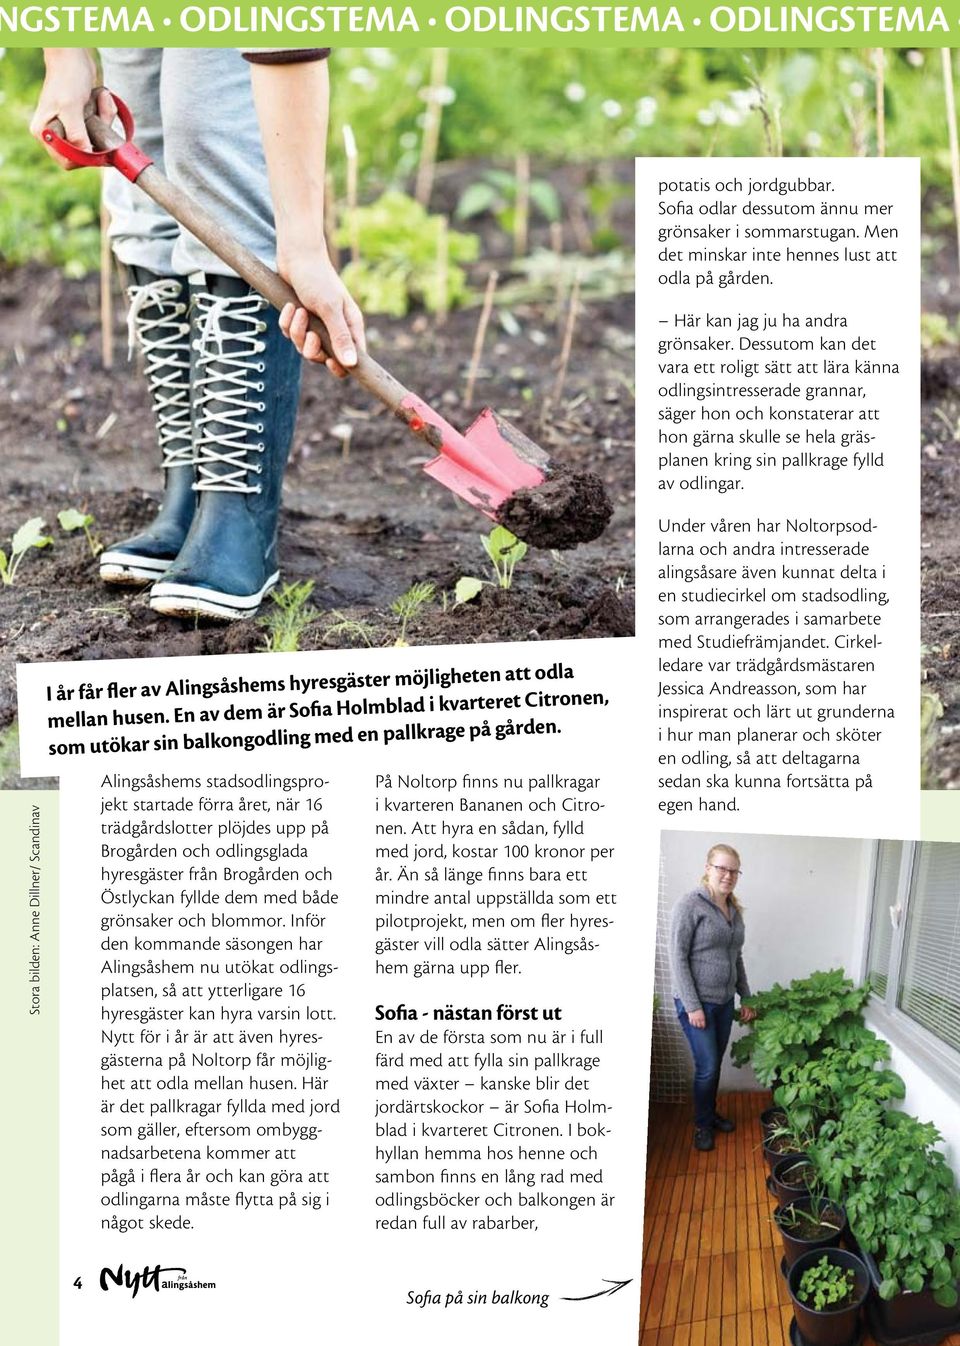 Alingsåshems stadsodlingsprojekt startade förra året, när 16 trädgårdslotter plöjdes upp på Brogården och odlingsglada hyresgäster från Brogården och Östlyckan fyllde dem med både grönsaker och